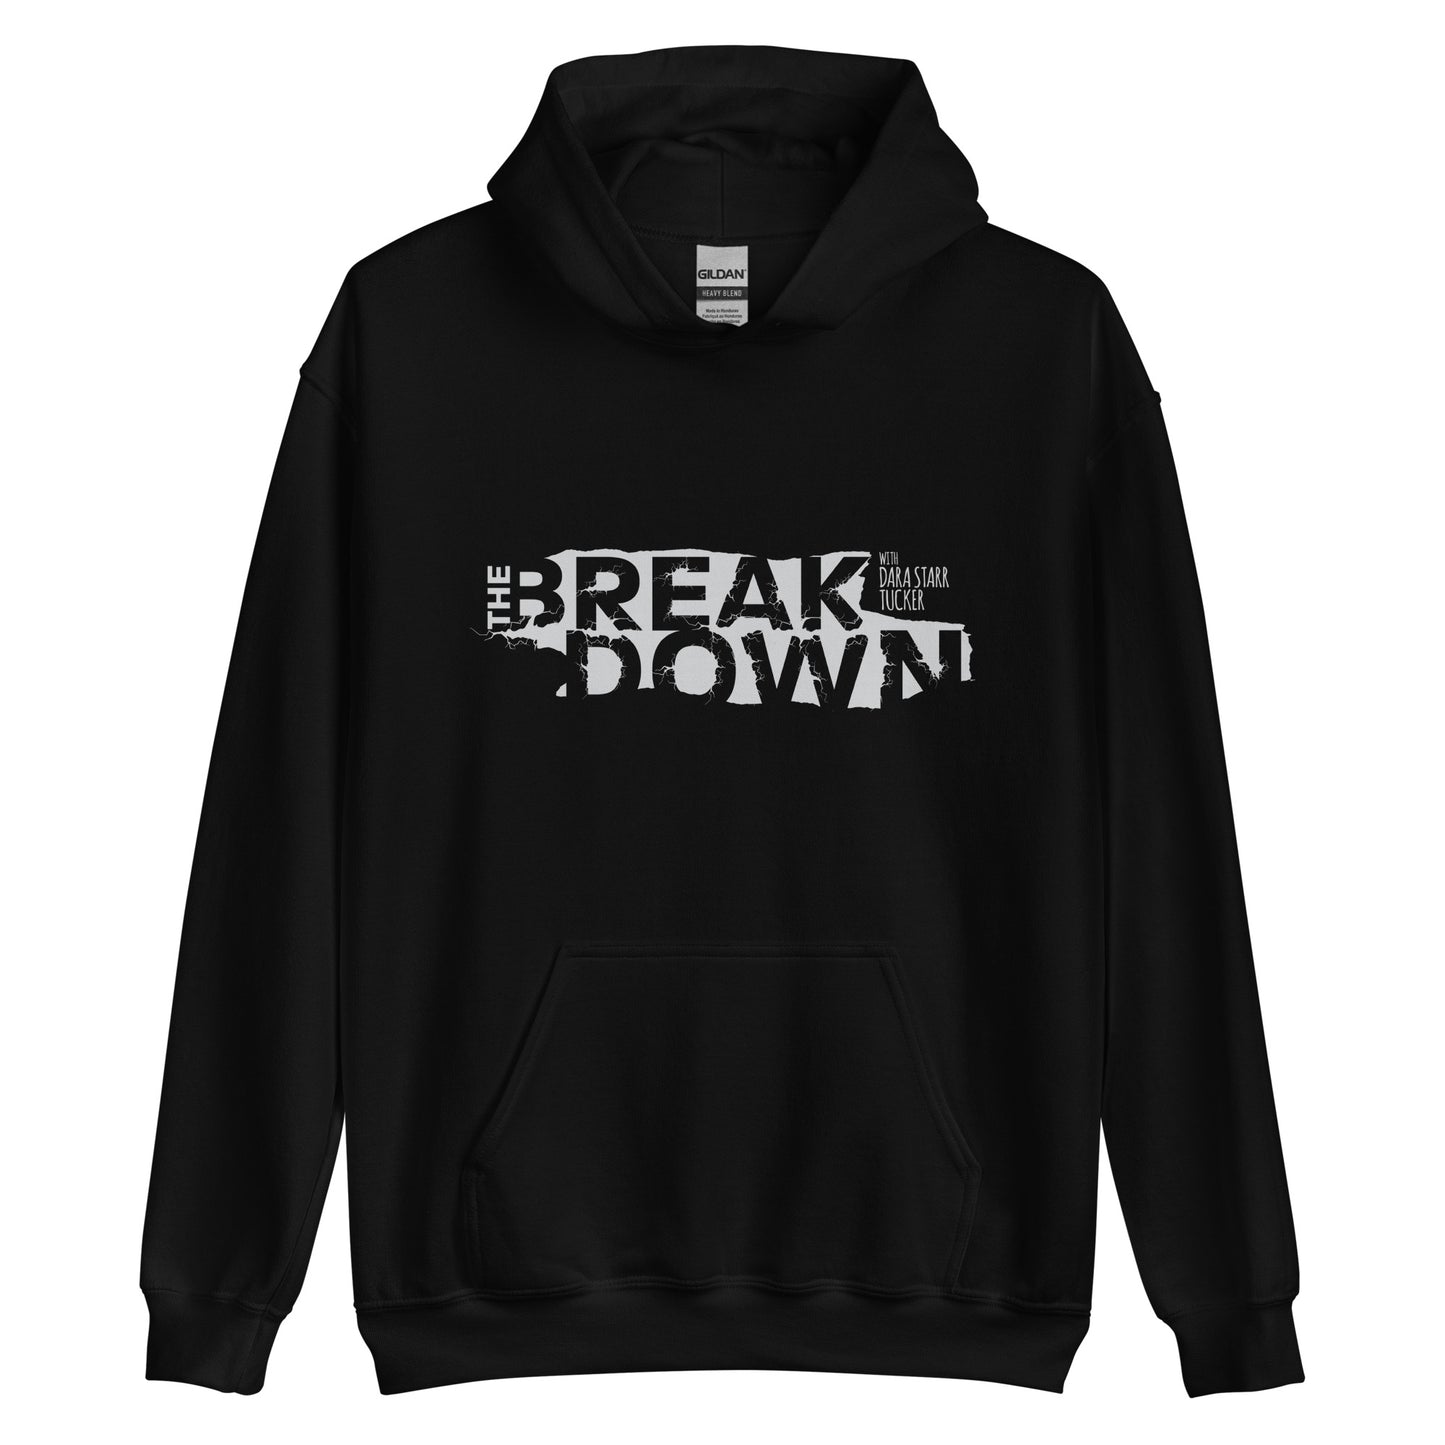 'The Breakdown' Unisex Hoodie - Black